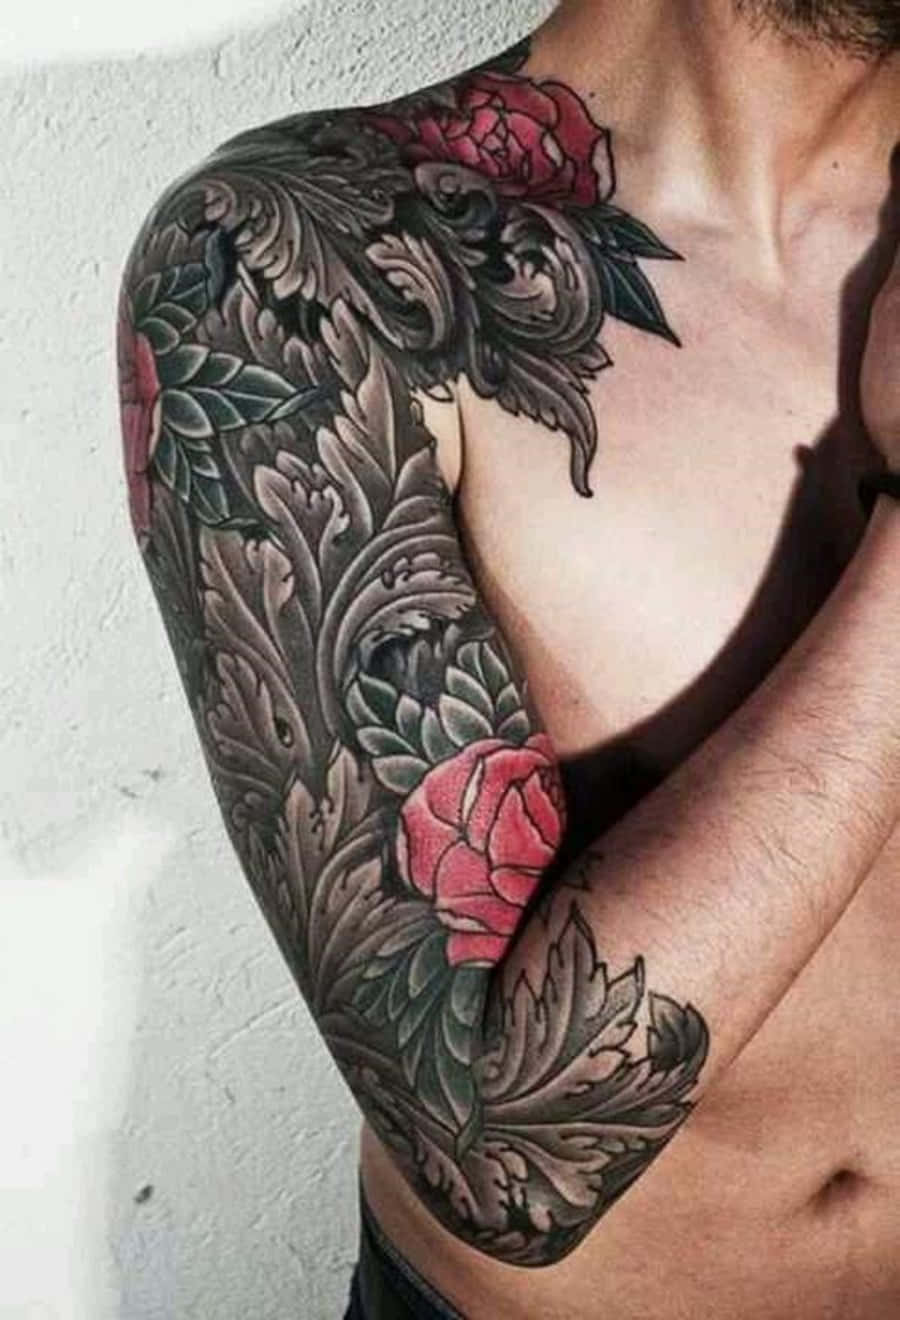 Hombrecon Tatuaje De Rosas Rojas En El Brazo Fotografía.